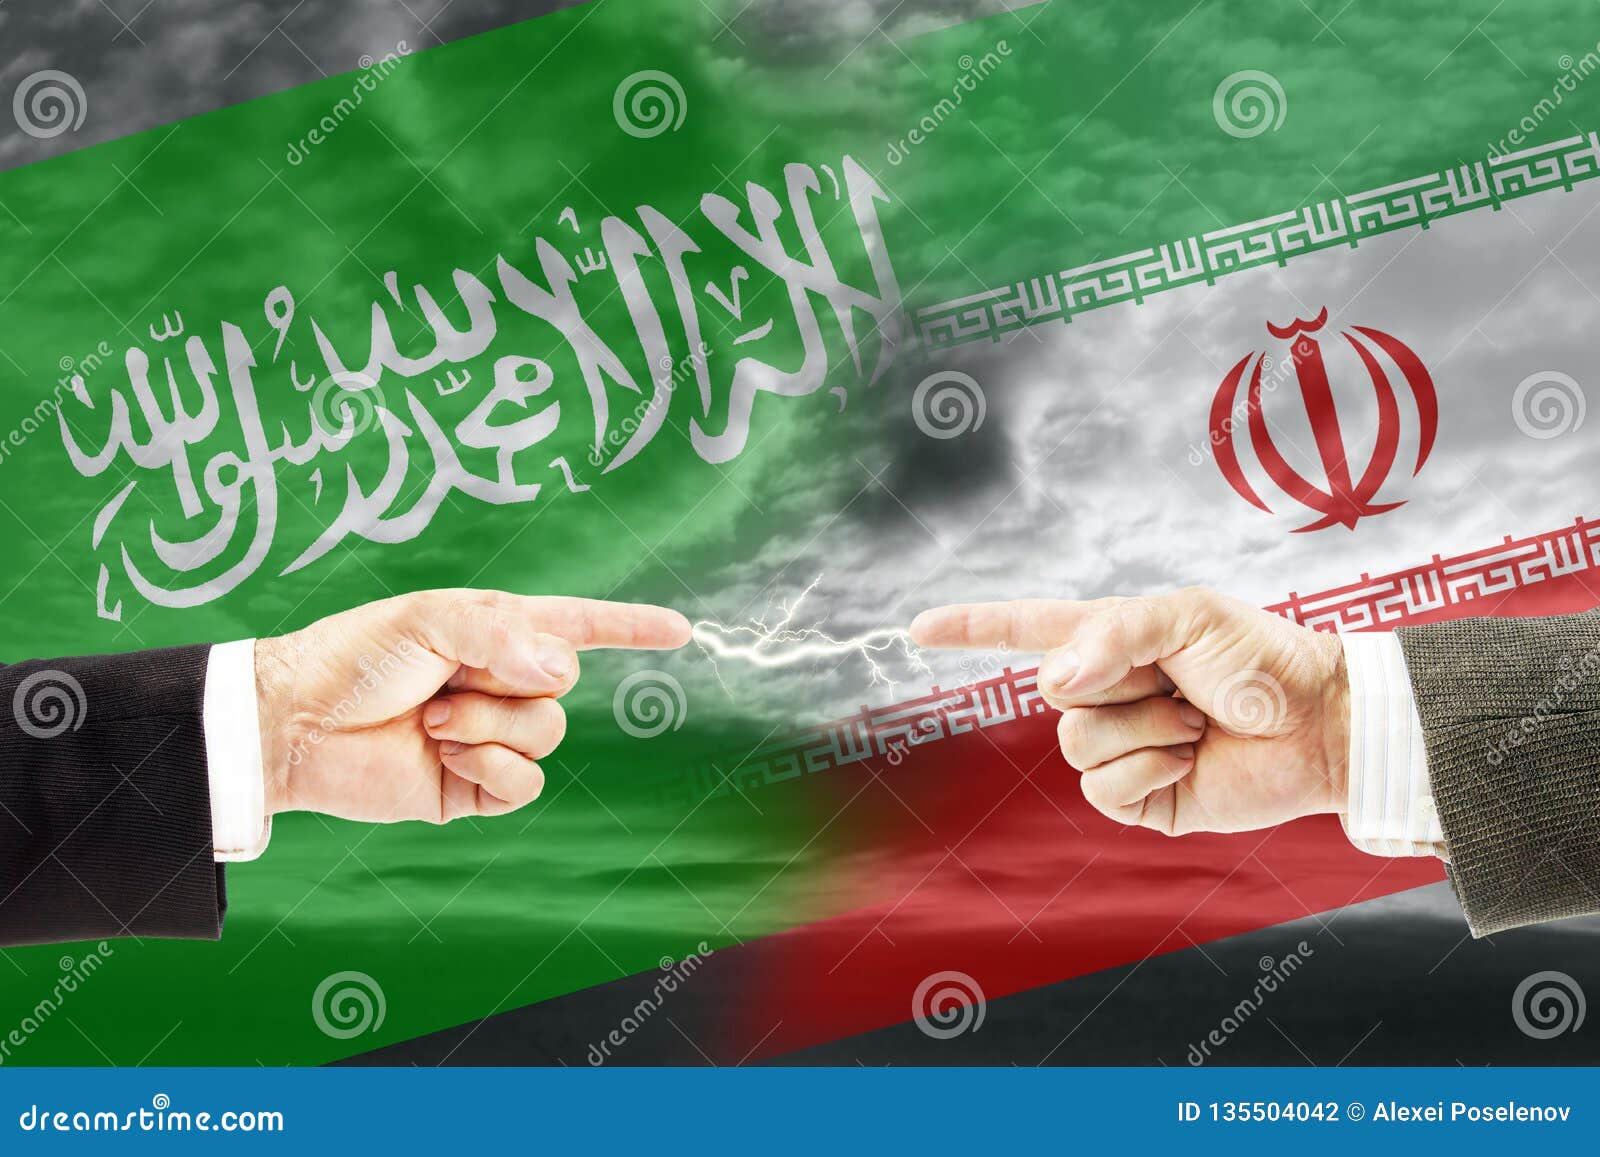 Саудовская аравия конфликты. Иран и Саудовская Аравия. Саудовская Аравия и Иран конфликт. Иран и Саудовская Аравия отношения. Конфликт между Ираном и Саудовской Аравией.